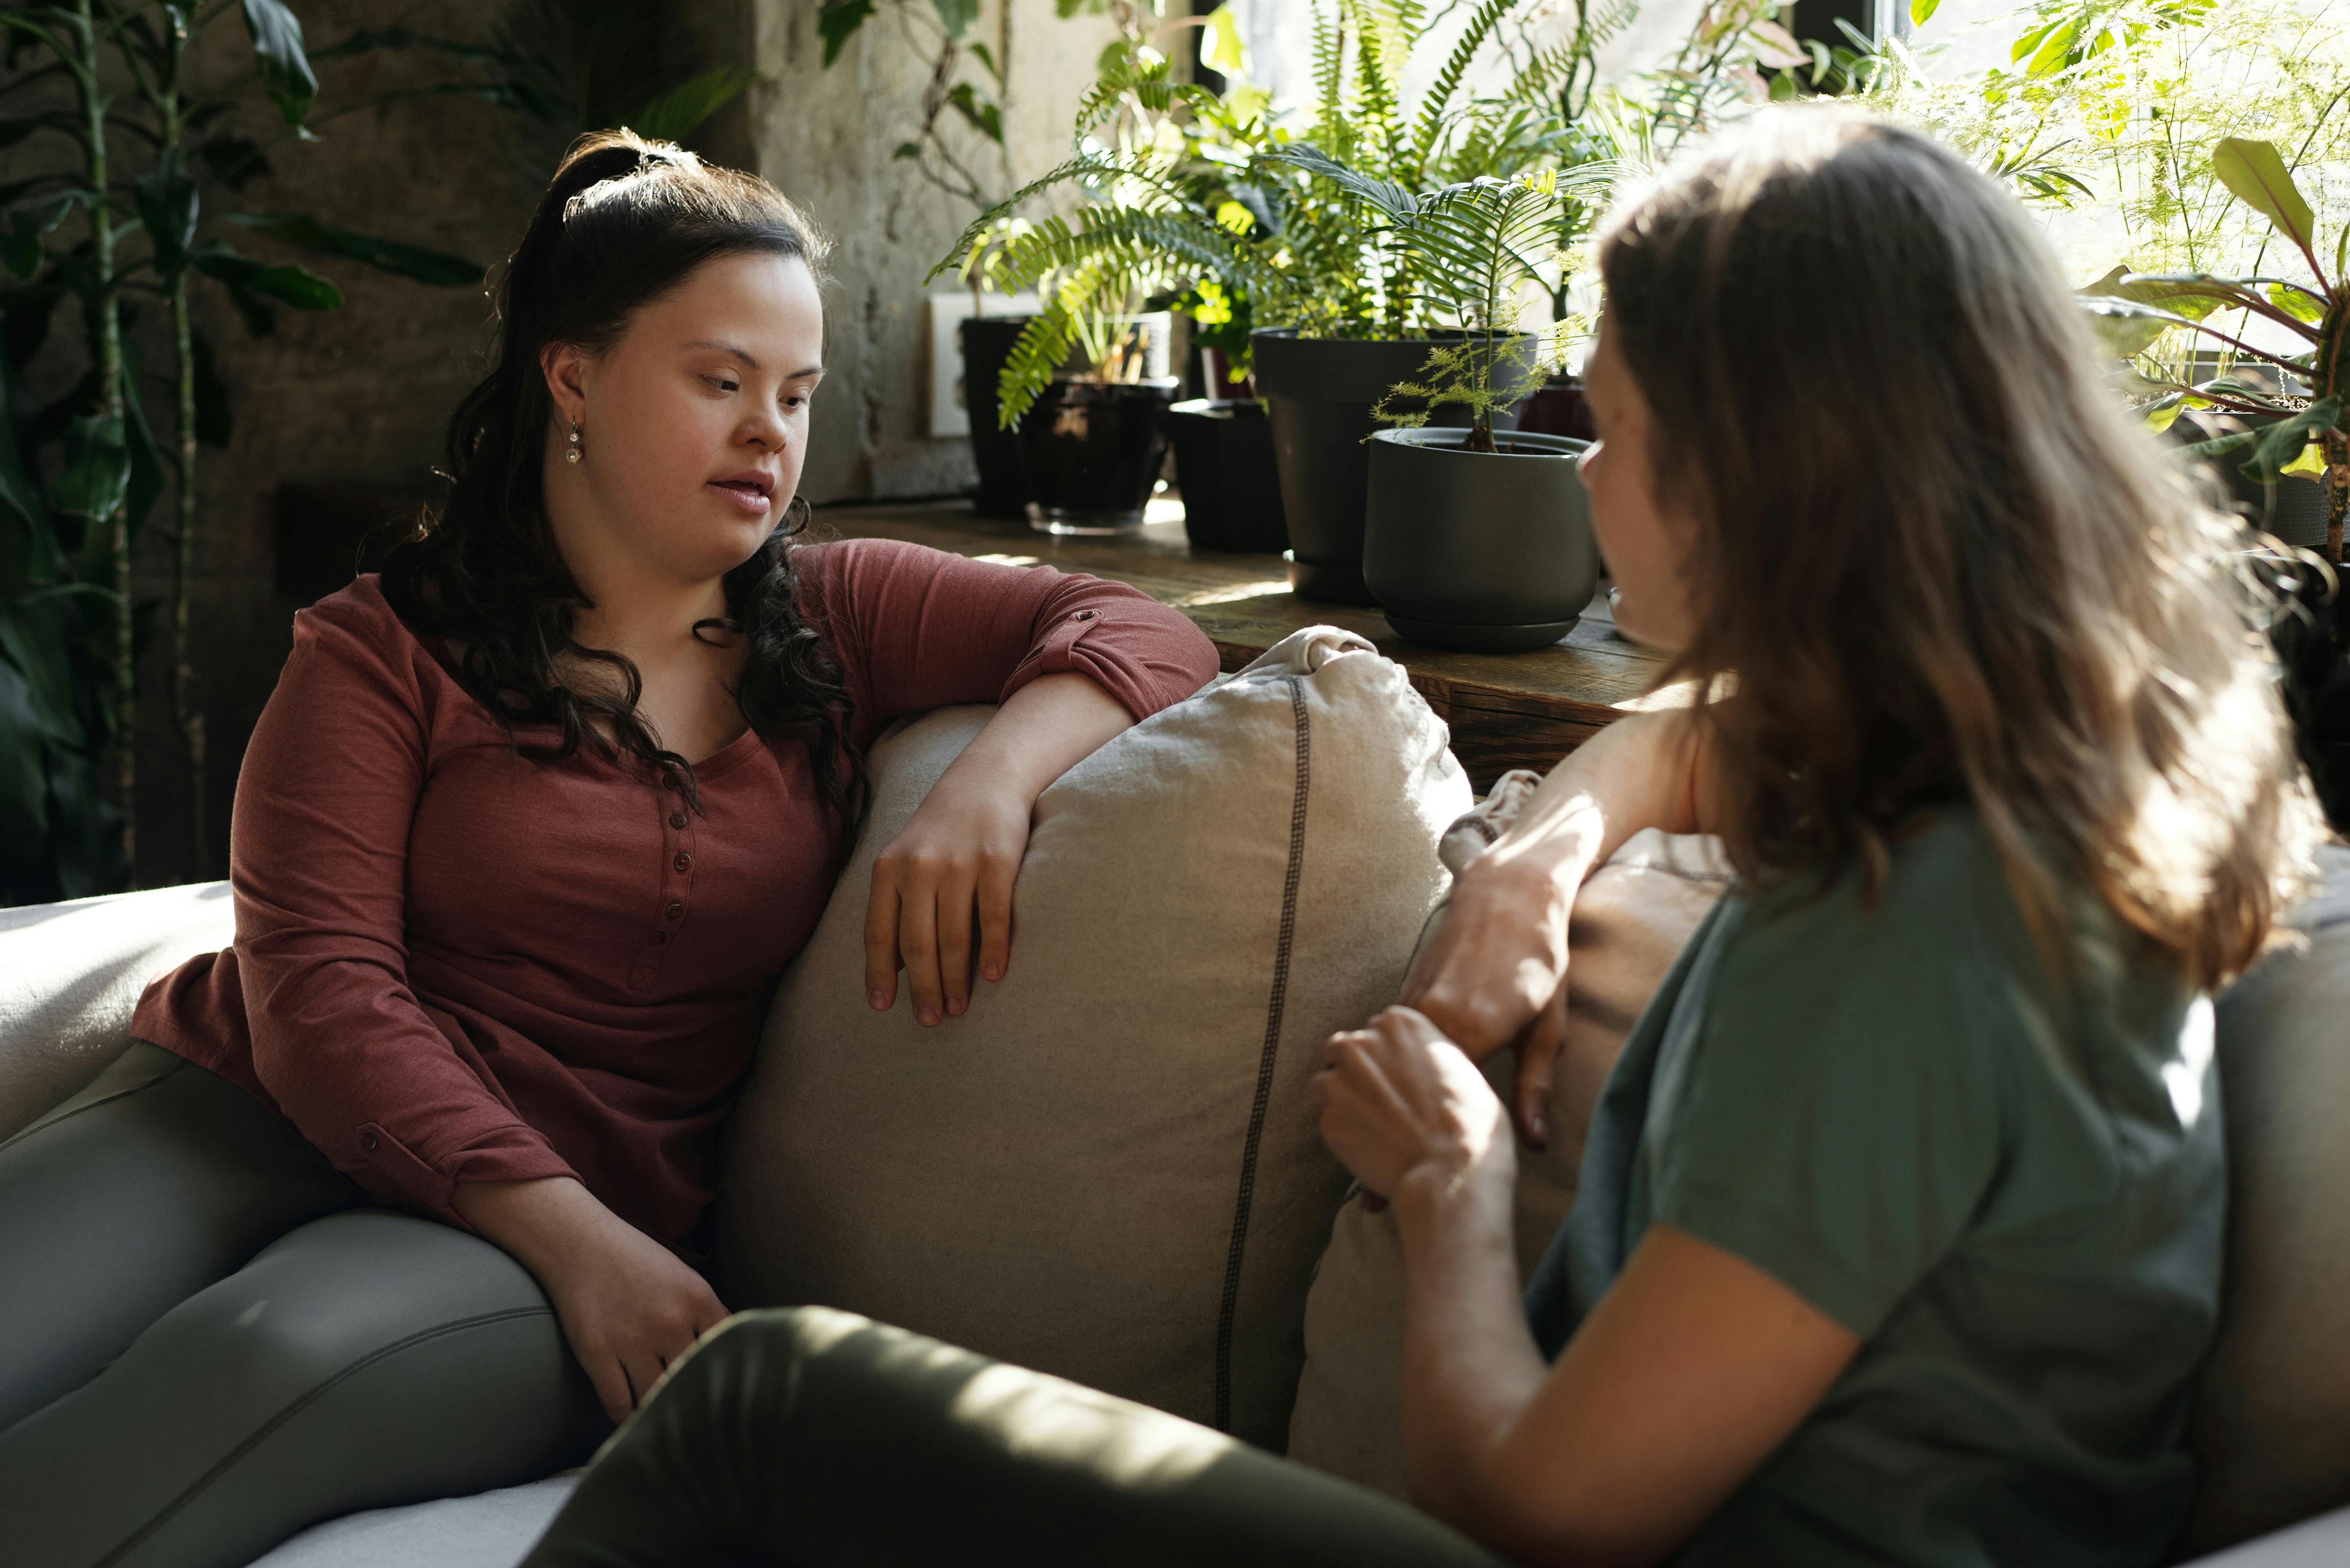 Deux femmes assises sur un canapé en train de parler | Source : Pexels